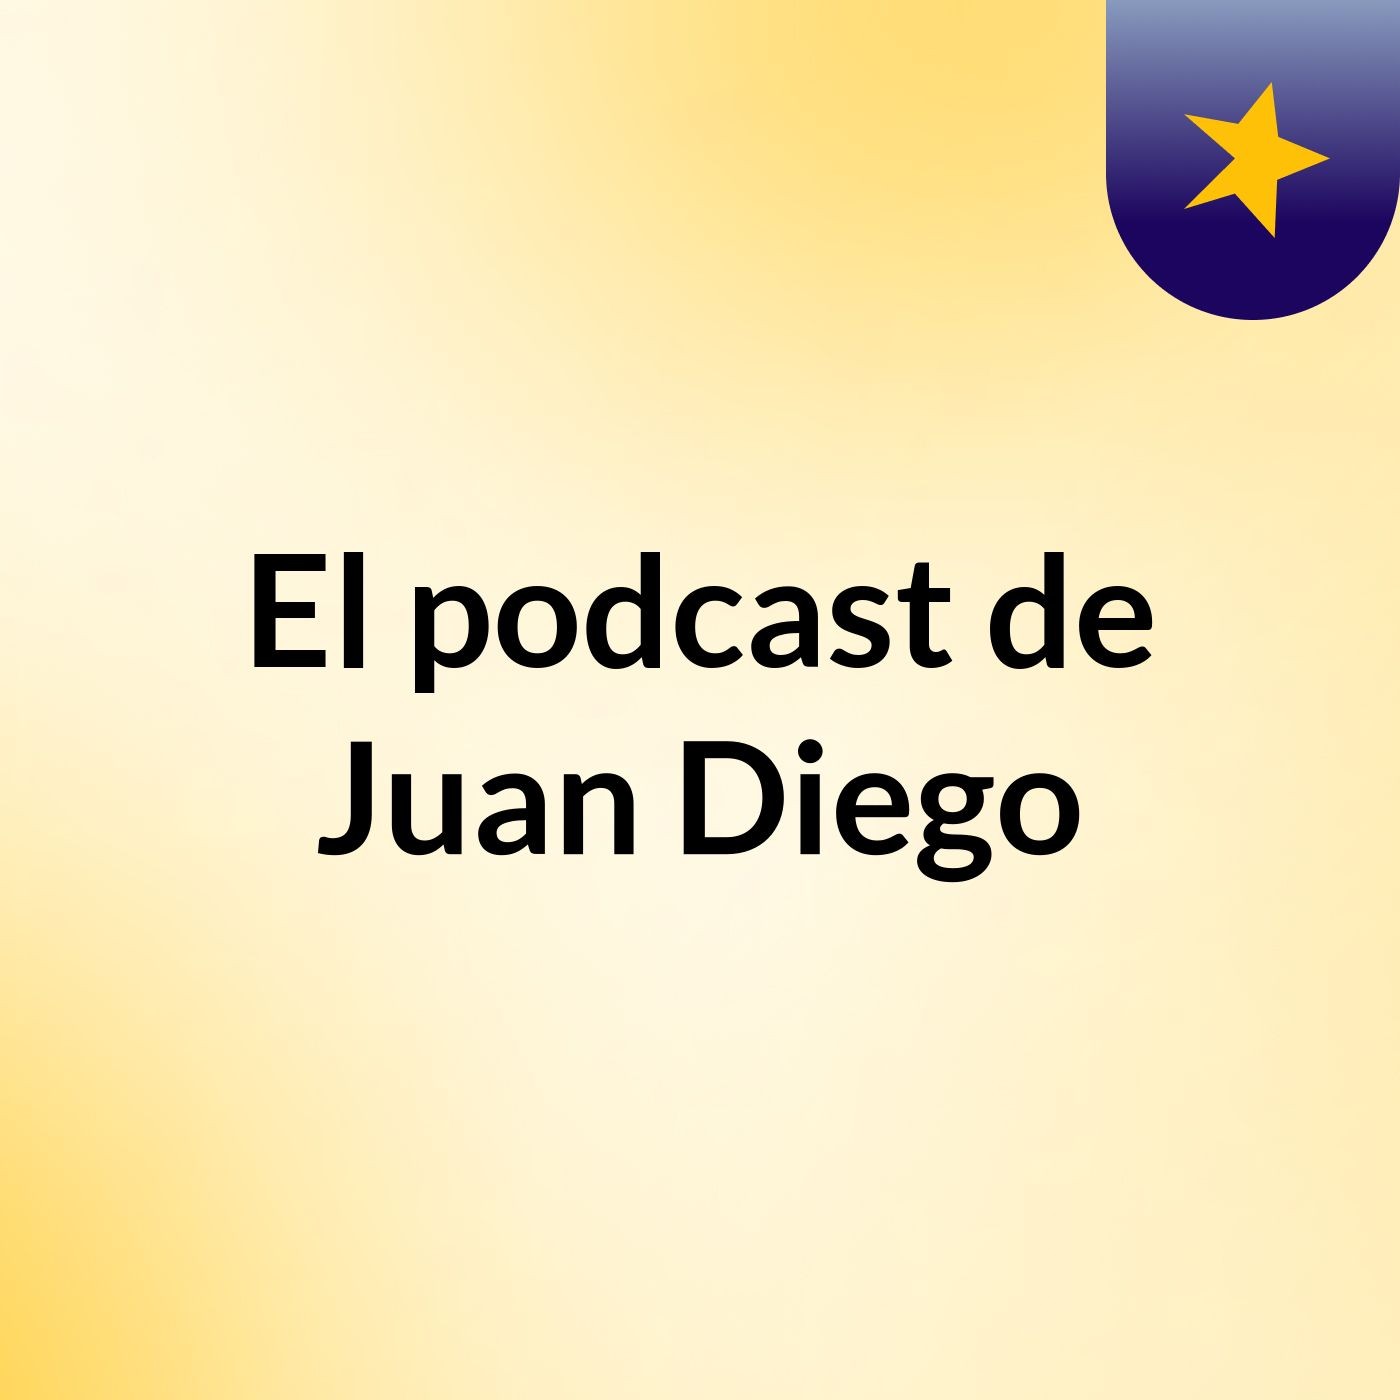 Episodio 3 - El podcast de Juan Diego